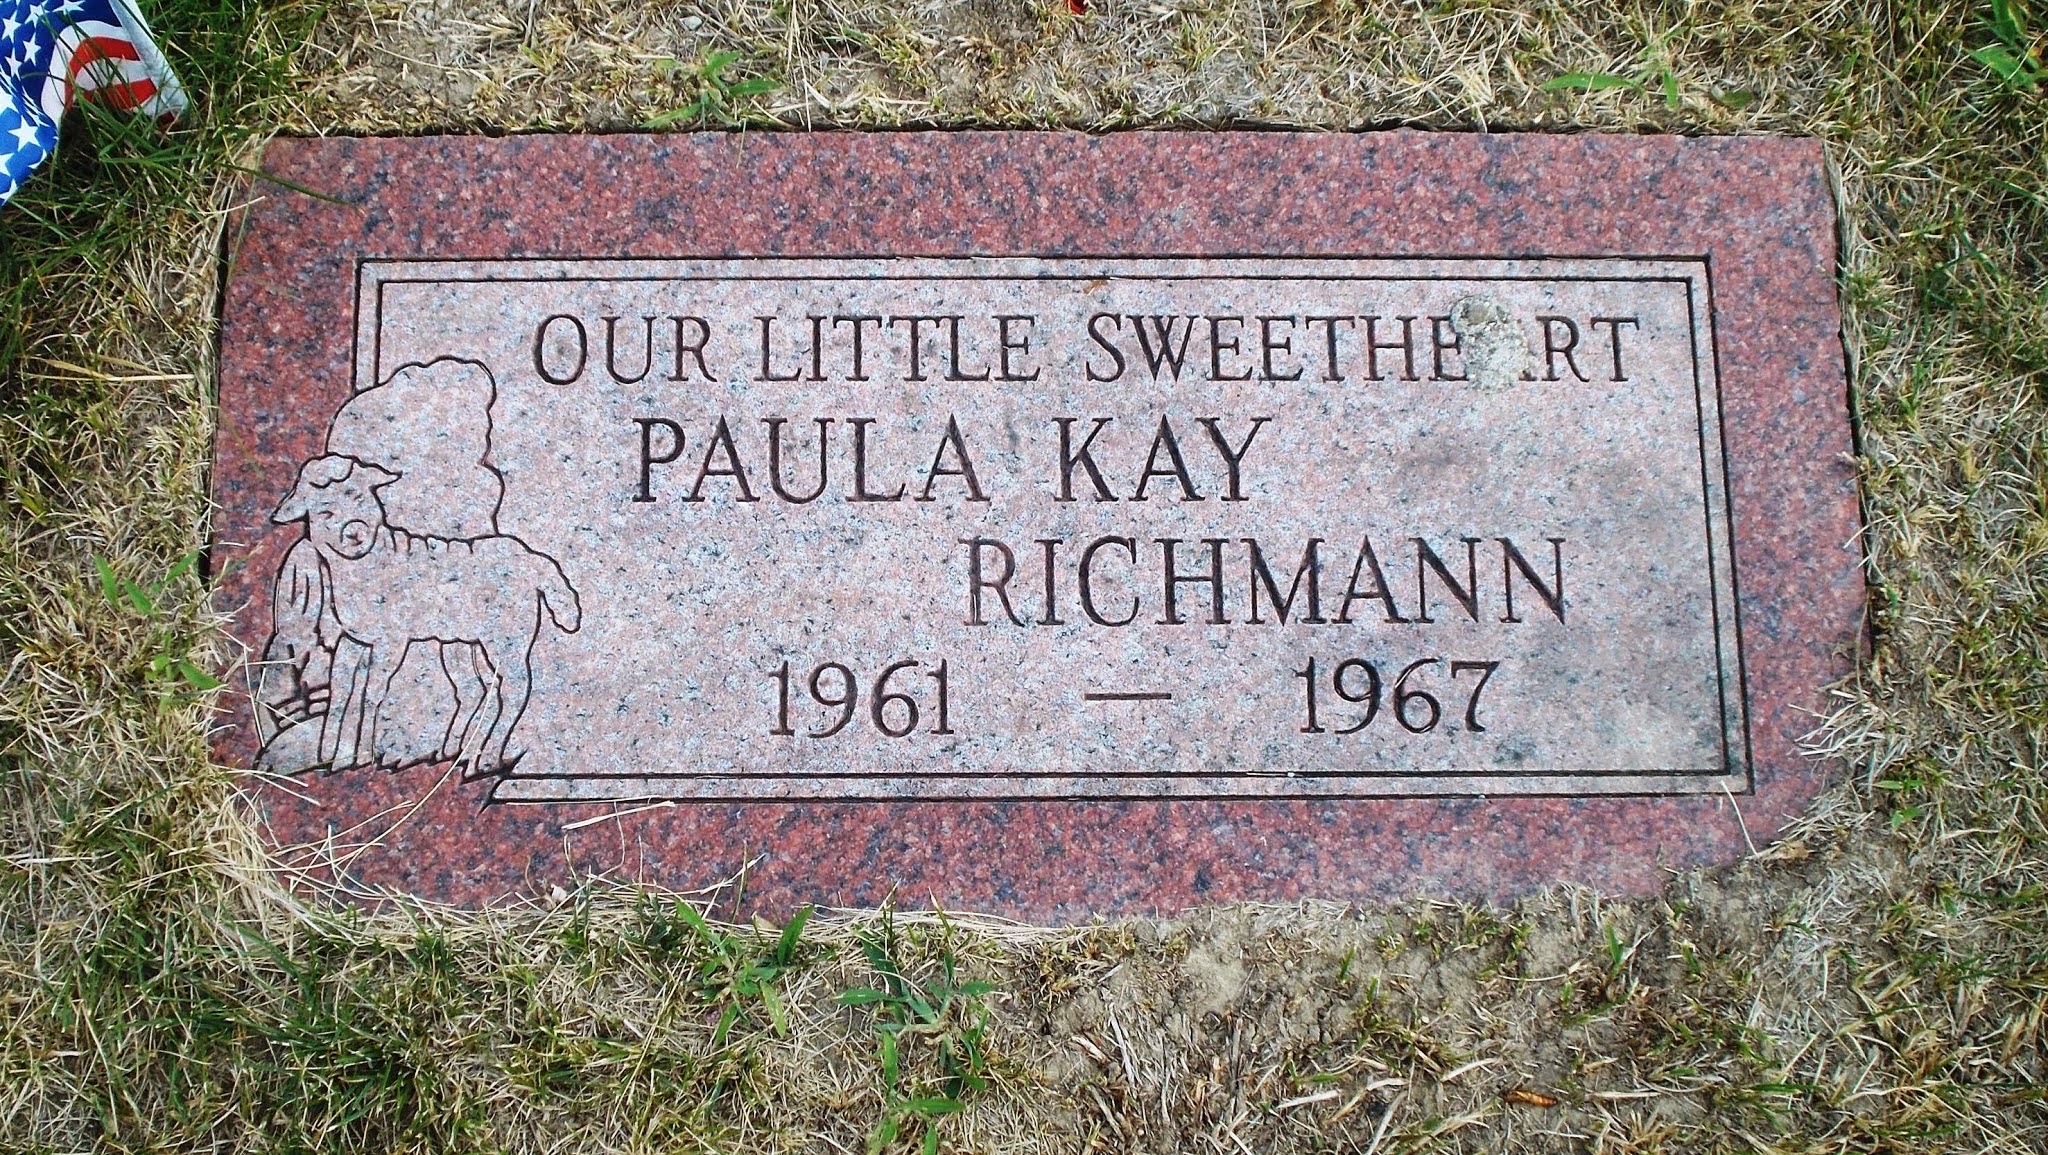 Paula Kay Richmann